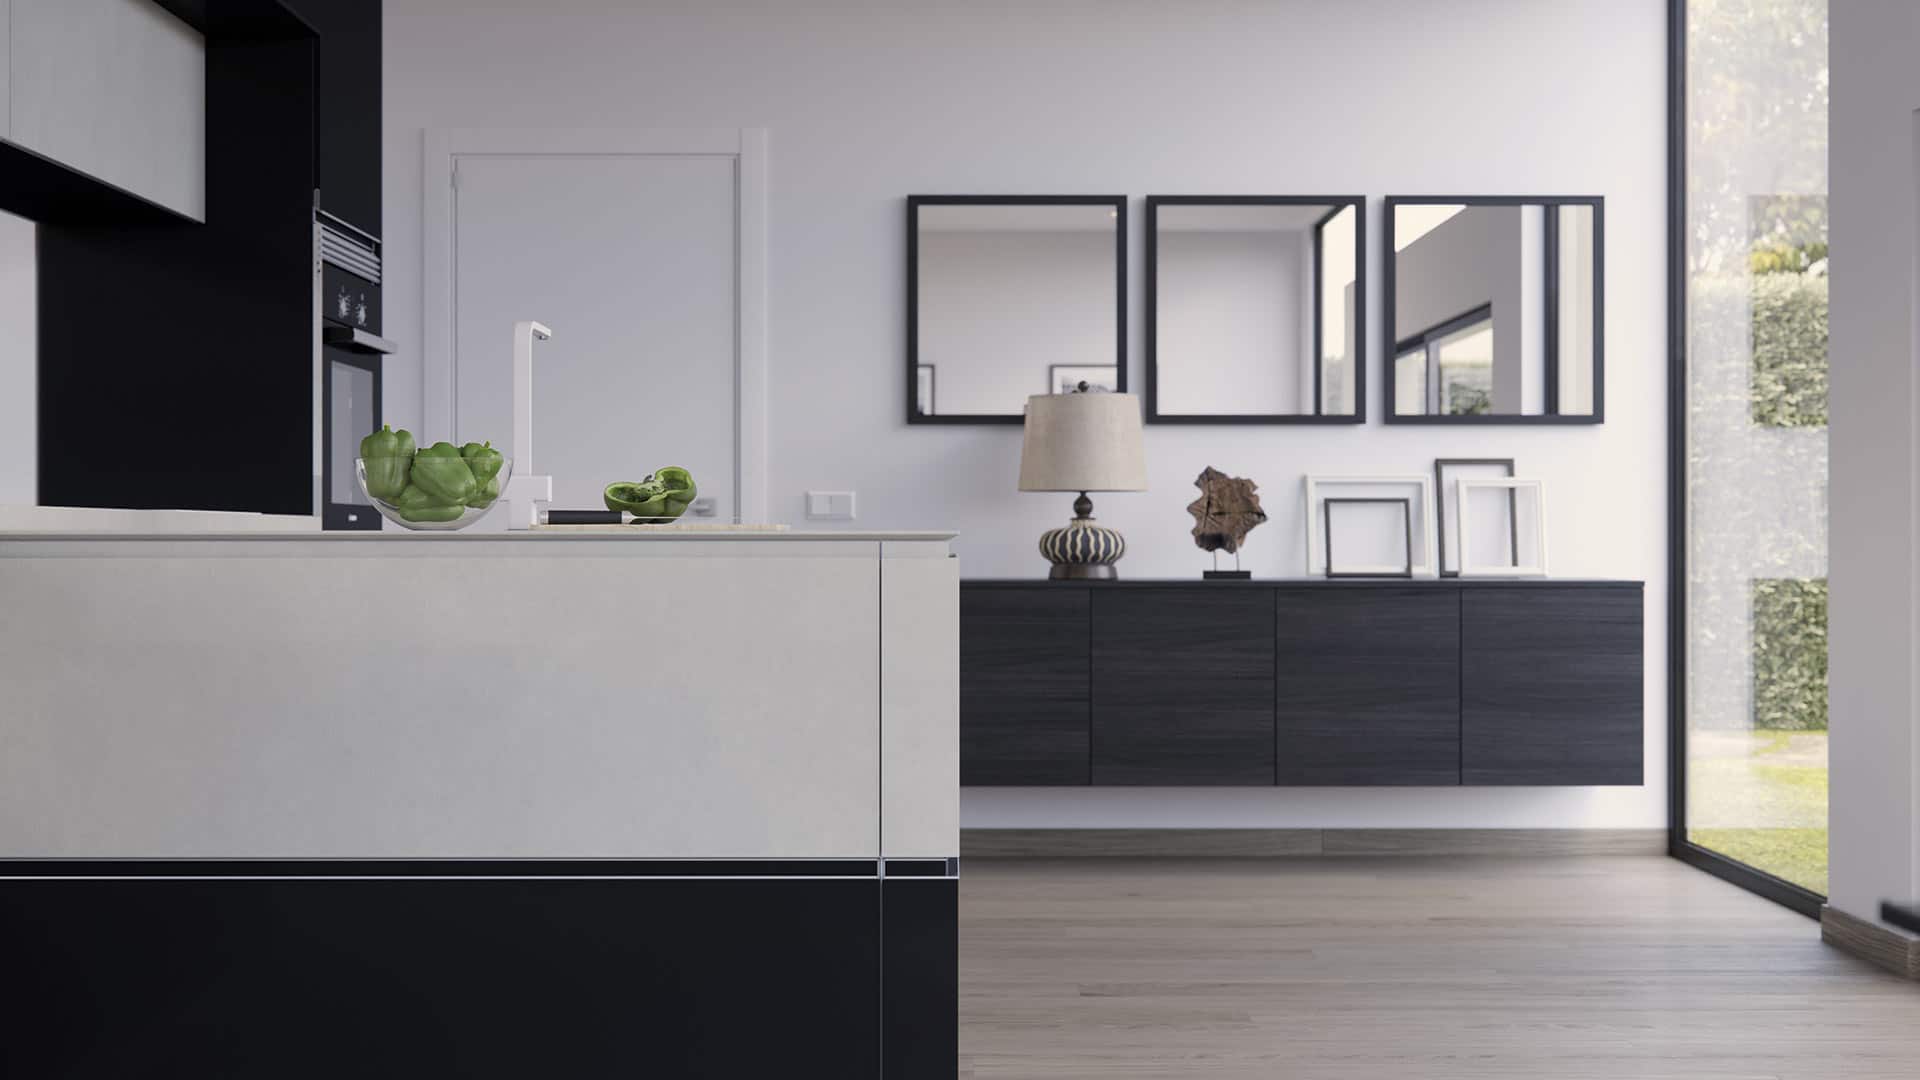 Mueble de diseño de la cocina familia en colores blanco y negro con fregadero y pimientos verdes sobre él a modo de decoración, junto a un mueble de acabado en madera y tres espejos en fila en posición horizontal